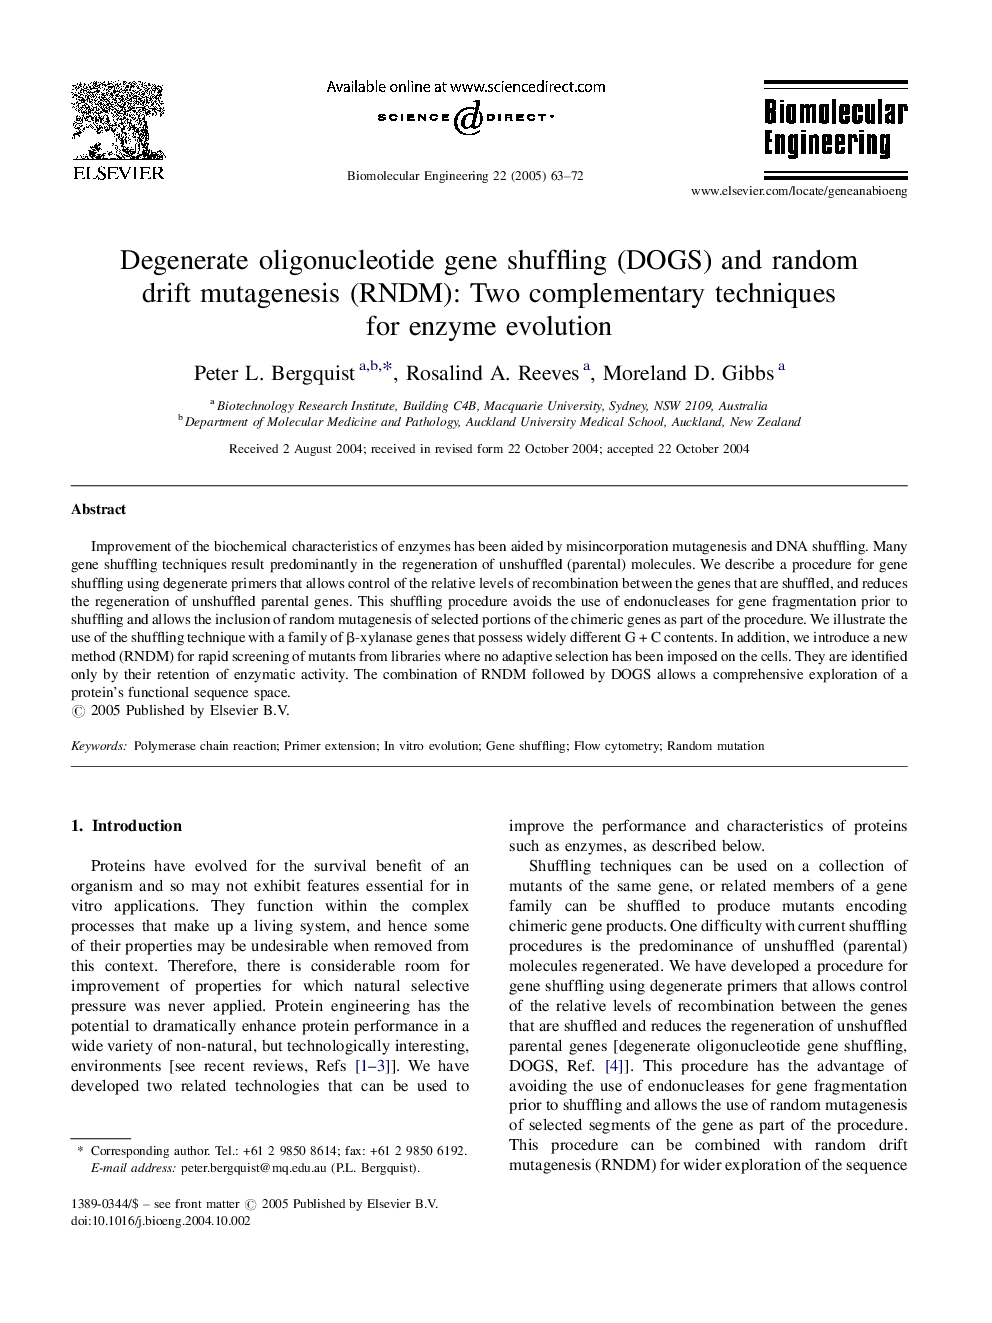 Degenerate oligonucleotide gene shuffling (DOGS) and random drift mutagenesis (RNDM): Two complementary techniques for enzyme evolution